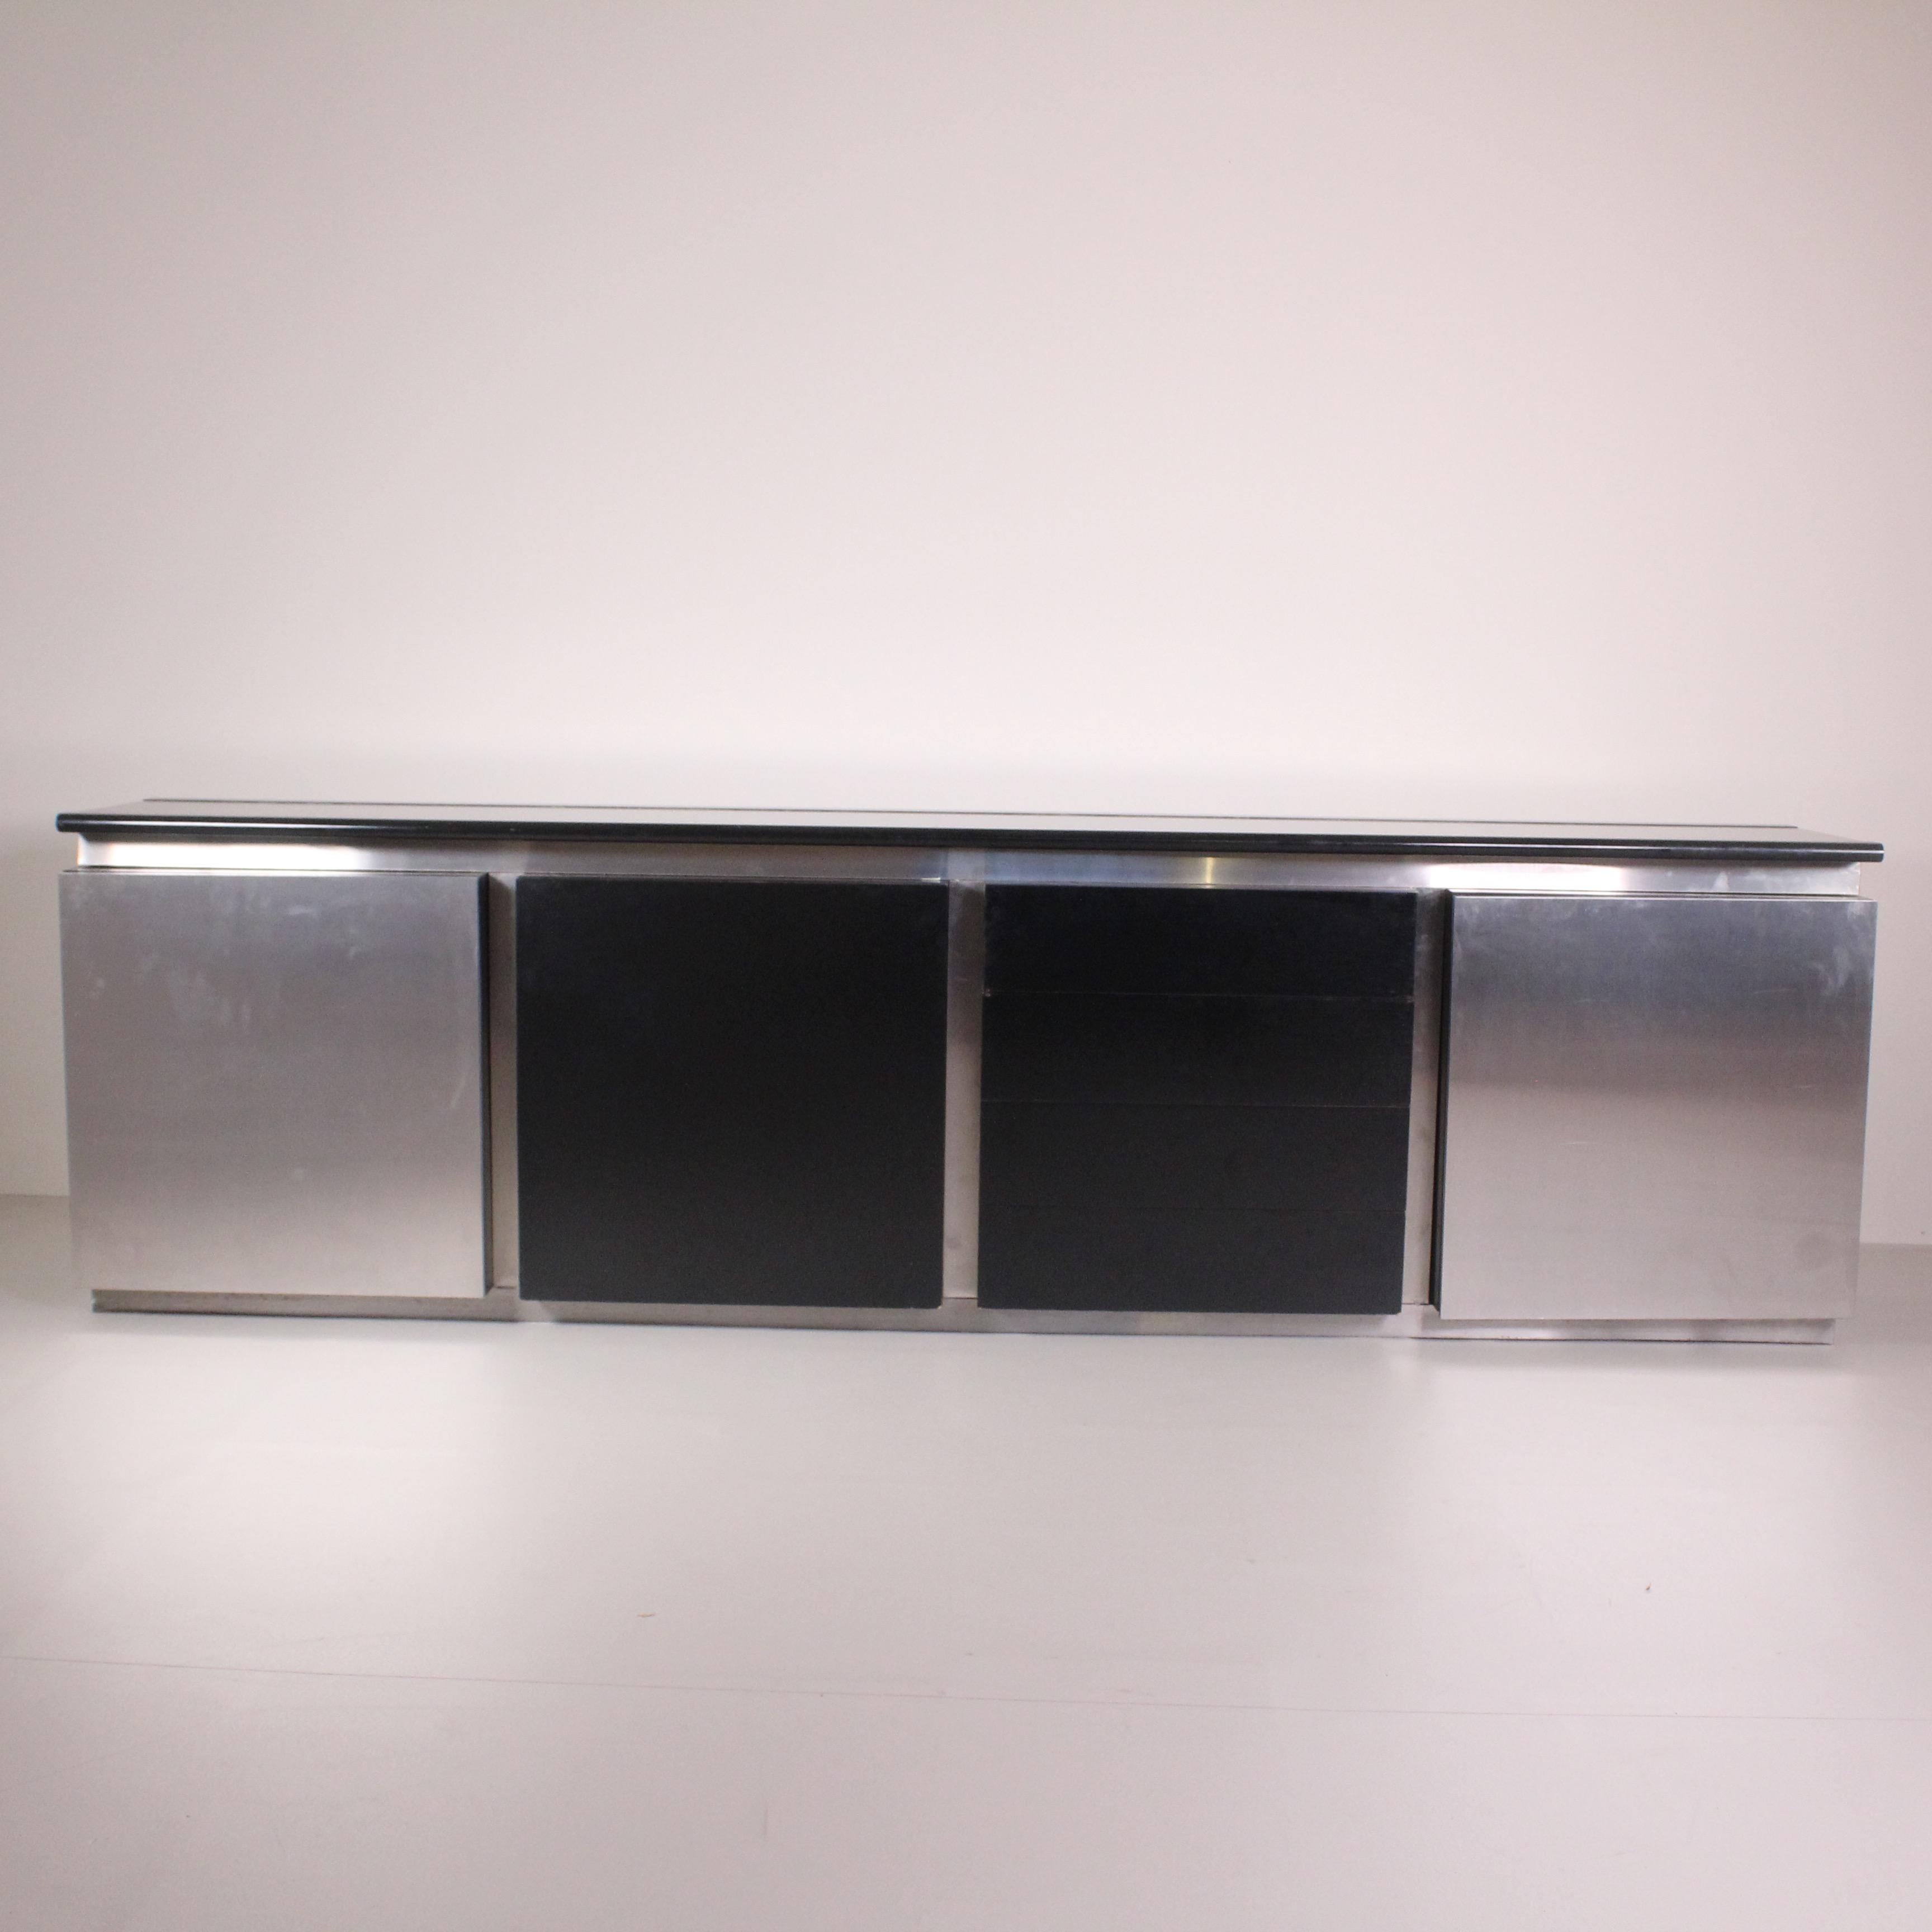 Das Sideboard Parioli von Lodovico Acerbis ist ein Werk, das Eleganz und Funktionalität perfekt miteinander verbindet. Mit seinen klaren Linien und seinem modernen Design fügt er sich harmonisch in jedes private oder berufliche Umfeld ein. Aus